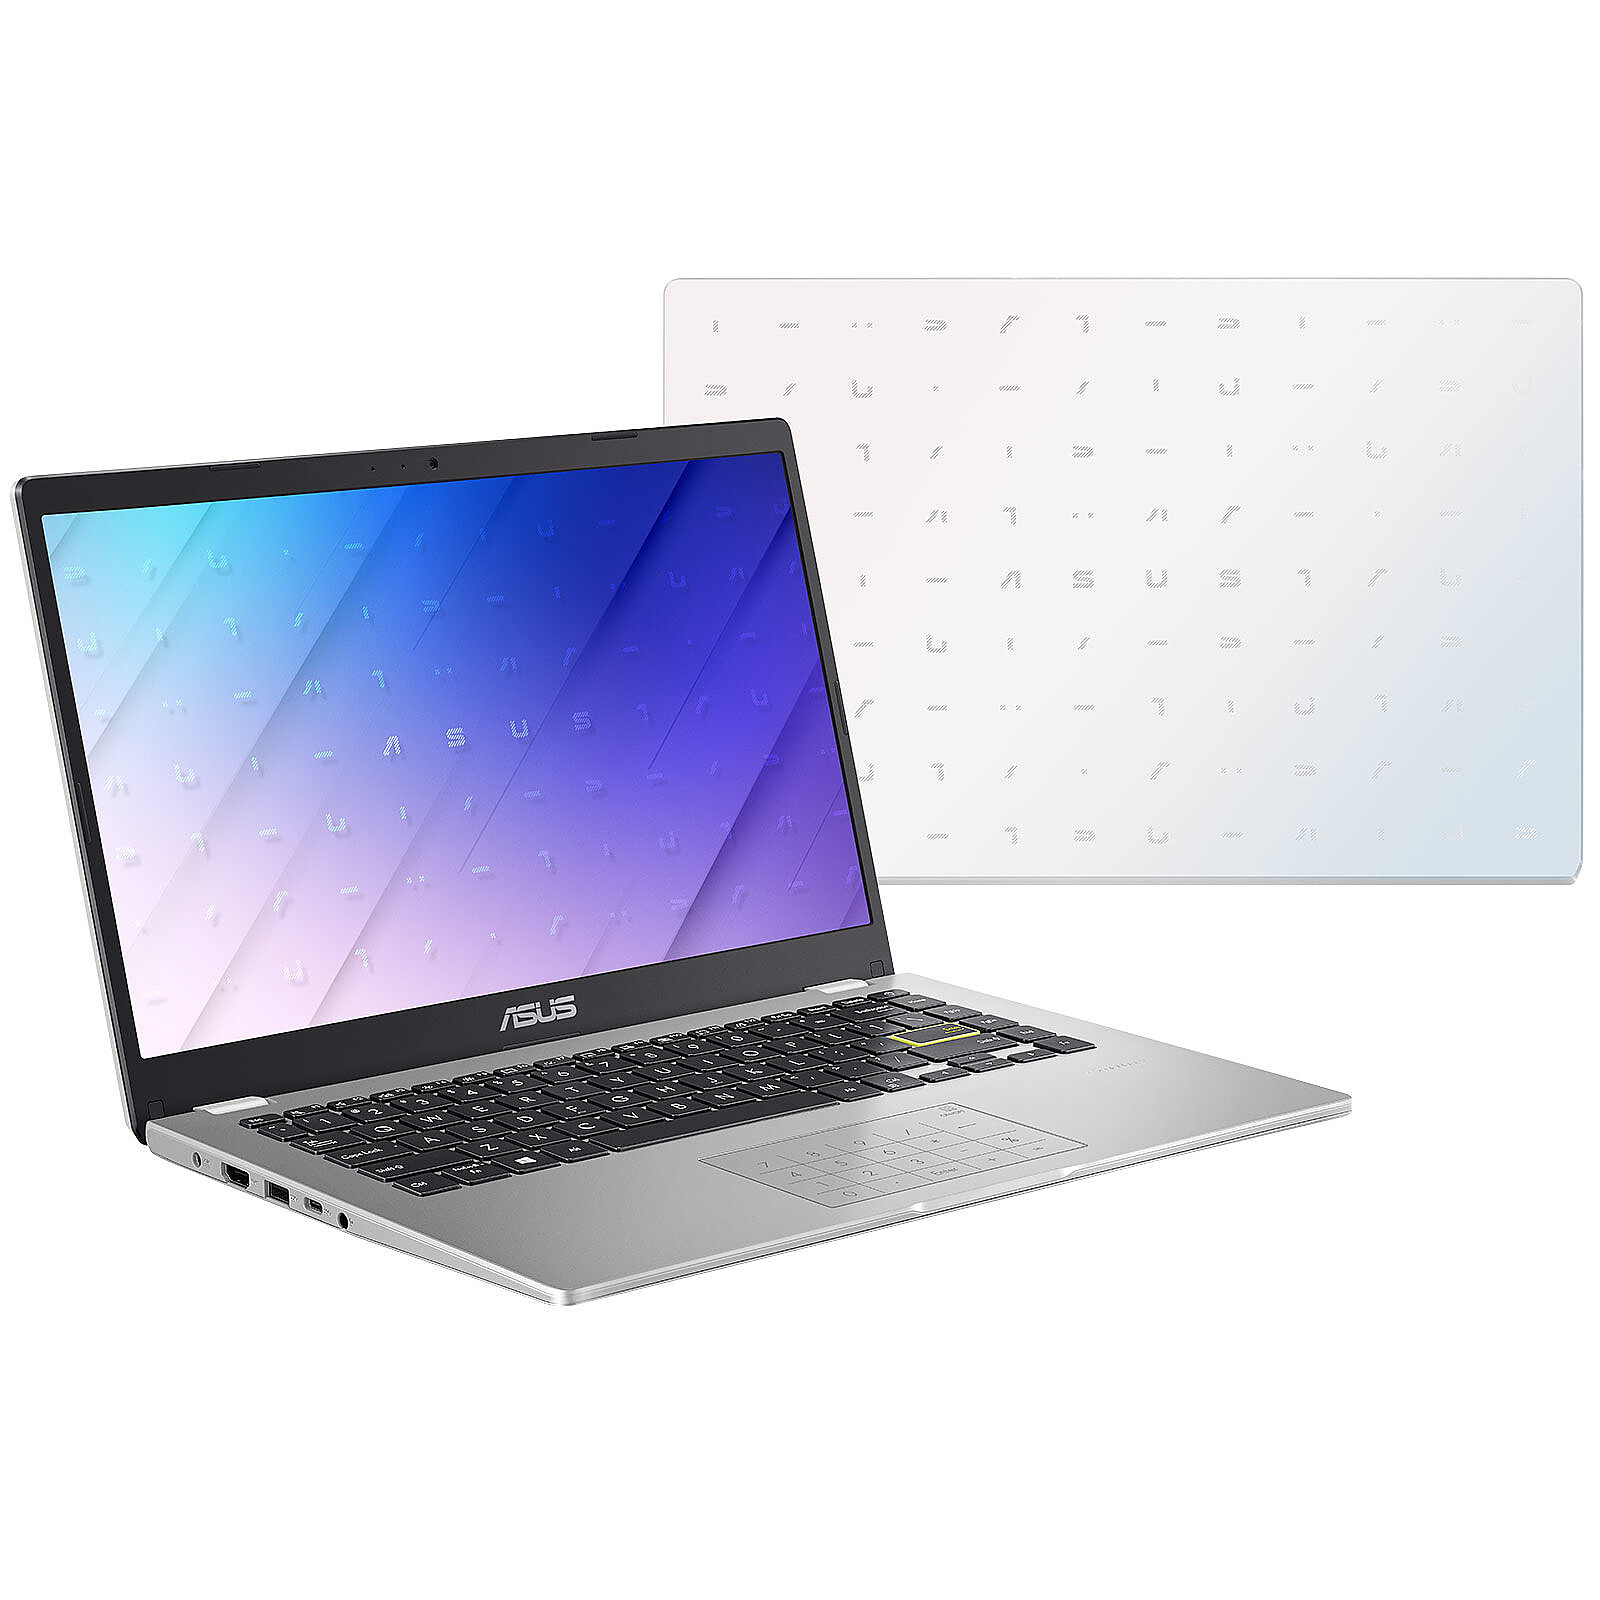 ASUS VivoBook 14 Laptop, Intel Pentium Processor, 4GB RAM